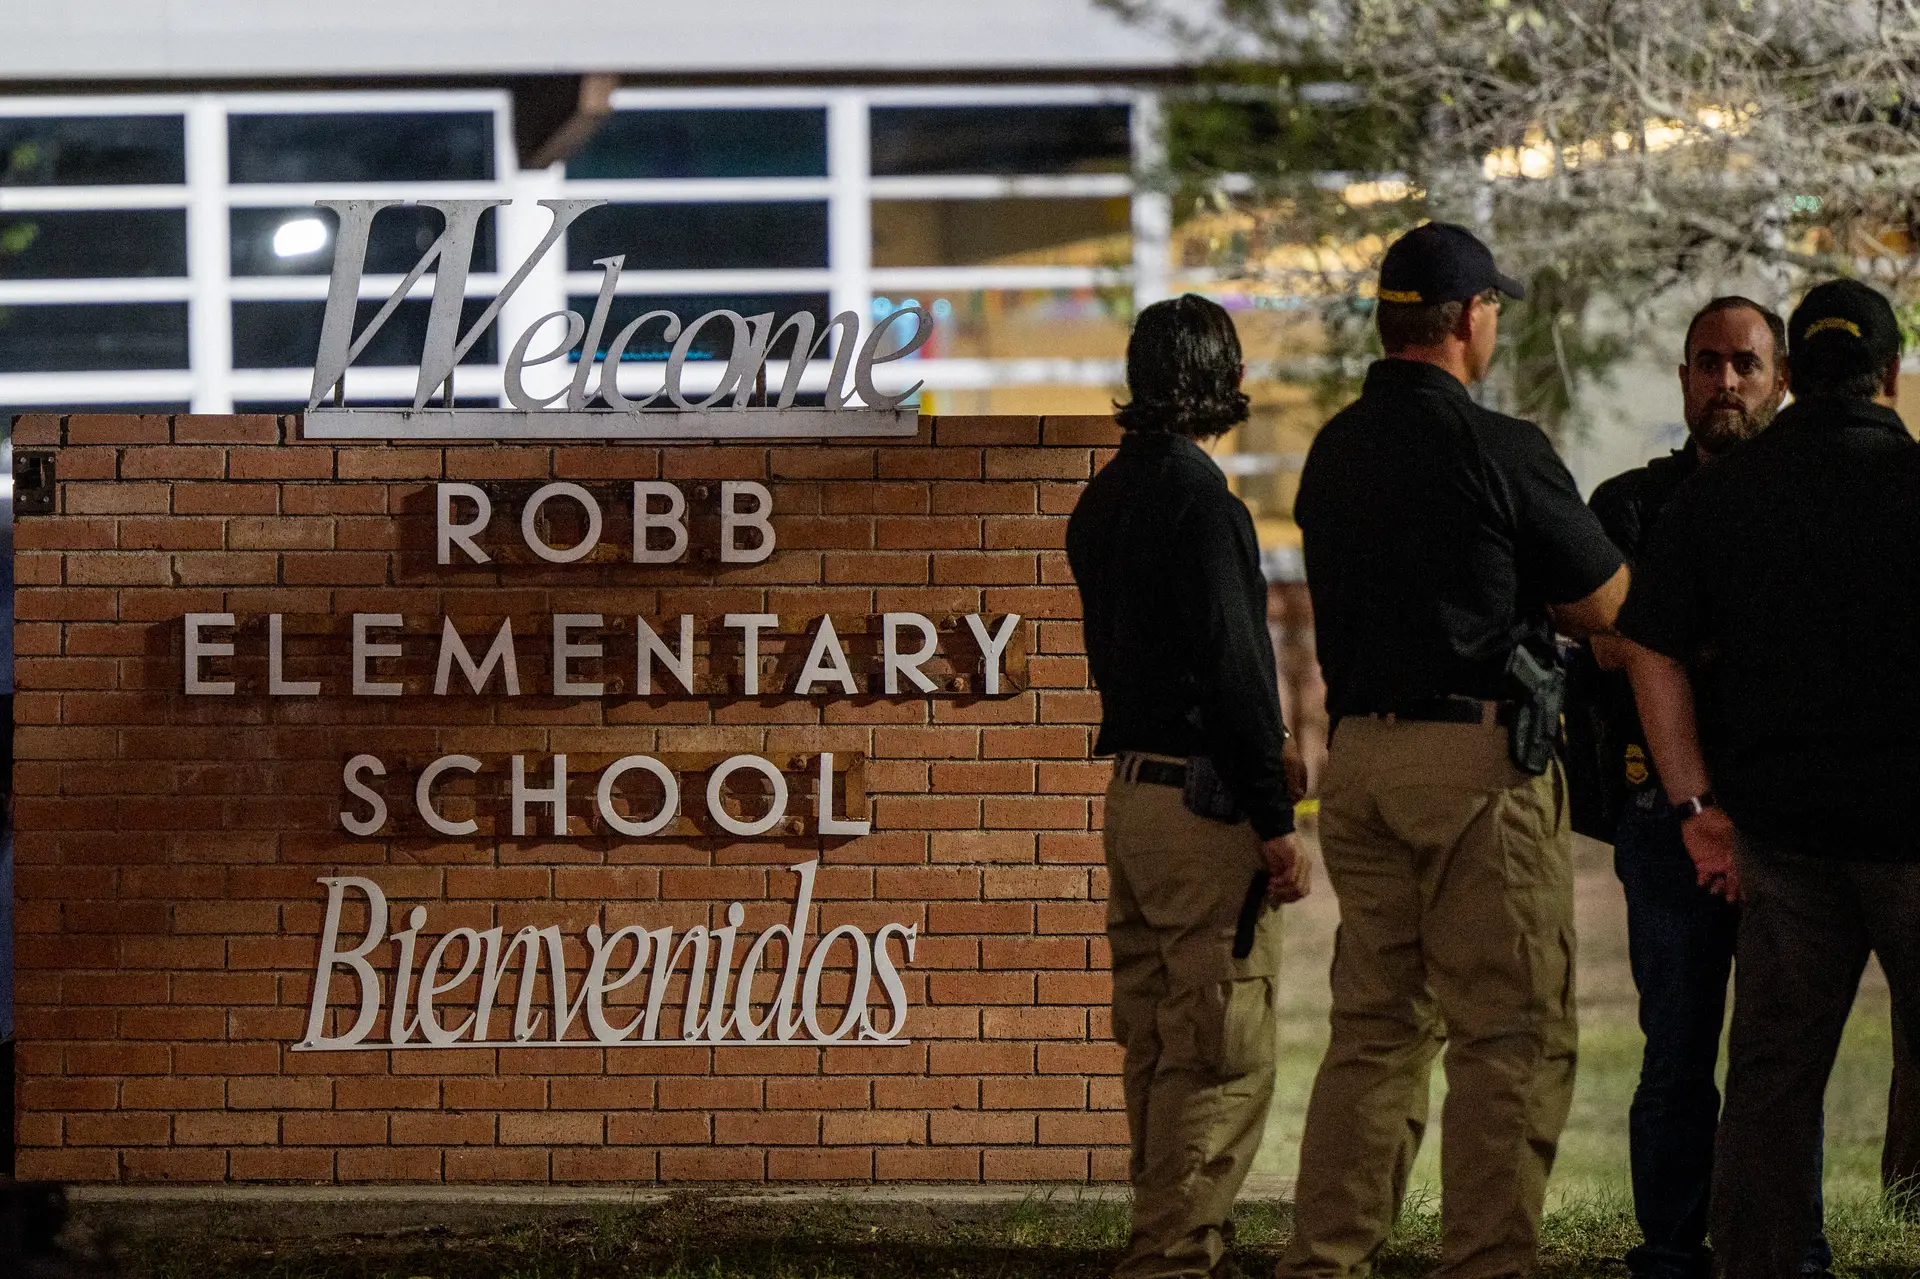 Mundo da música reage ao massacre que vitimou 19 crianças em escola primária no Texas. “Algo tem de mudar neste país”